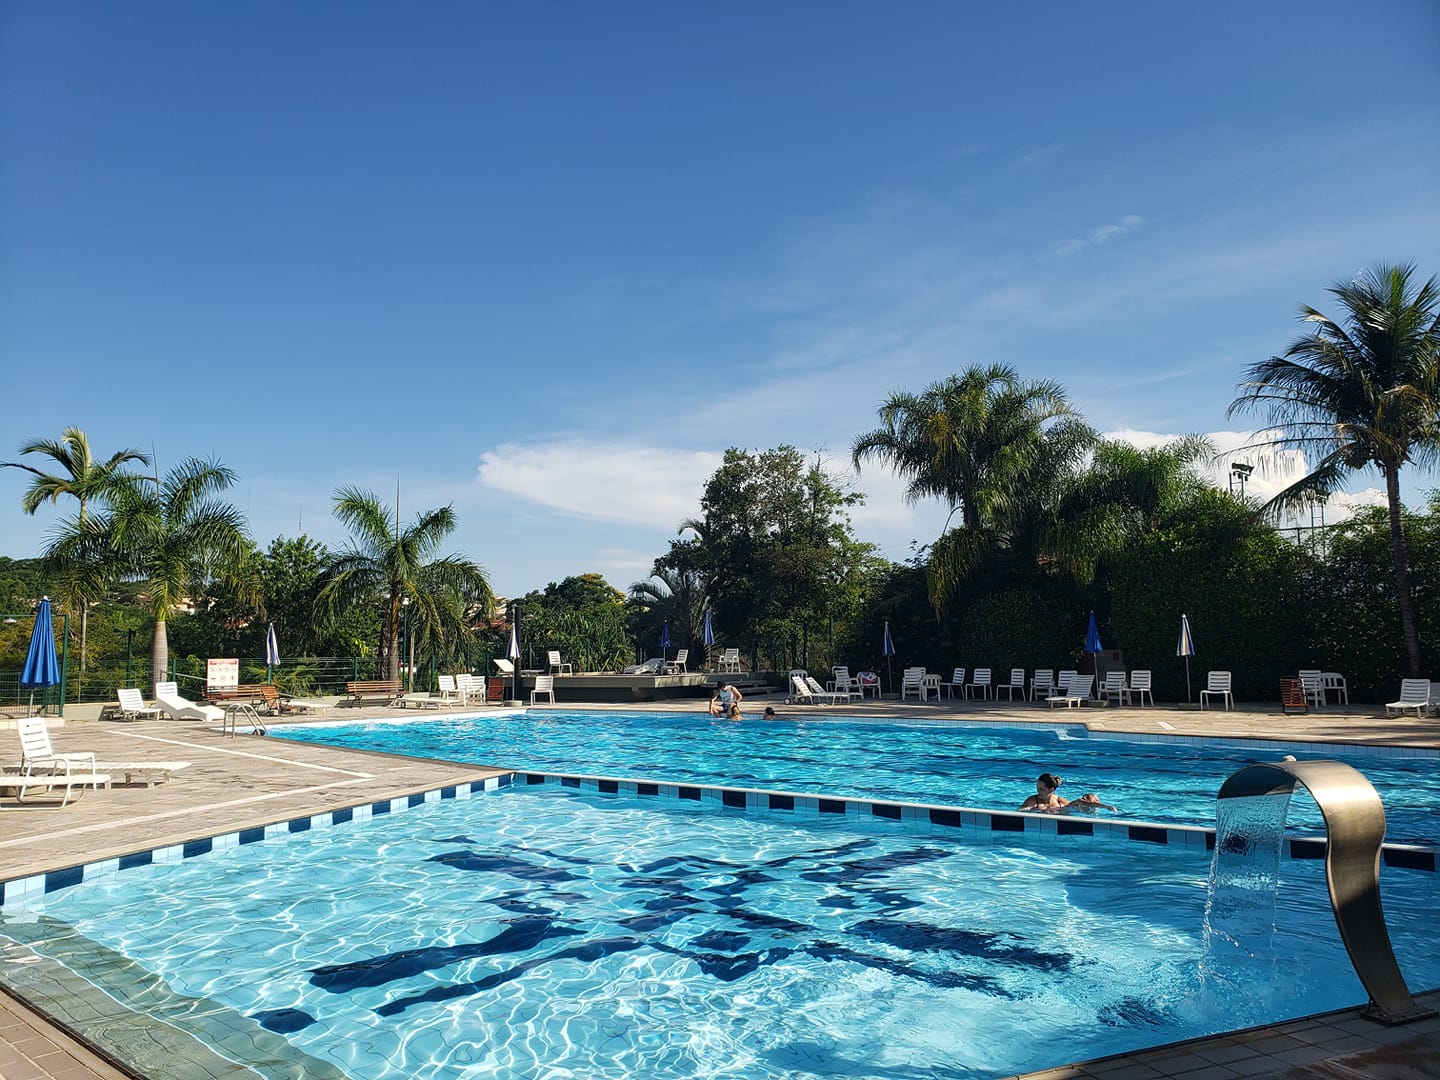 Clube de campo se prepara para o verão com piscina e salão de jogos  reformados – Palmeiras